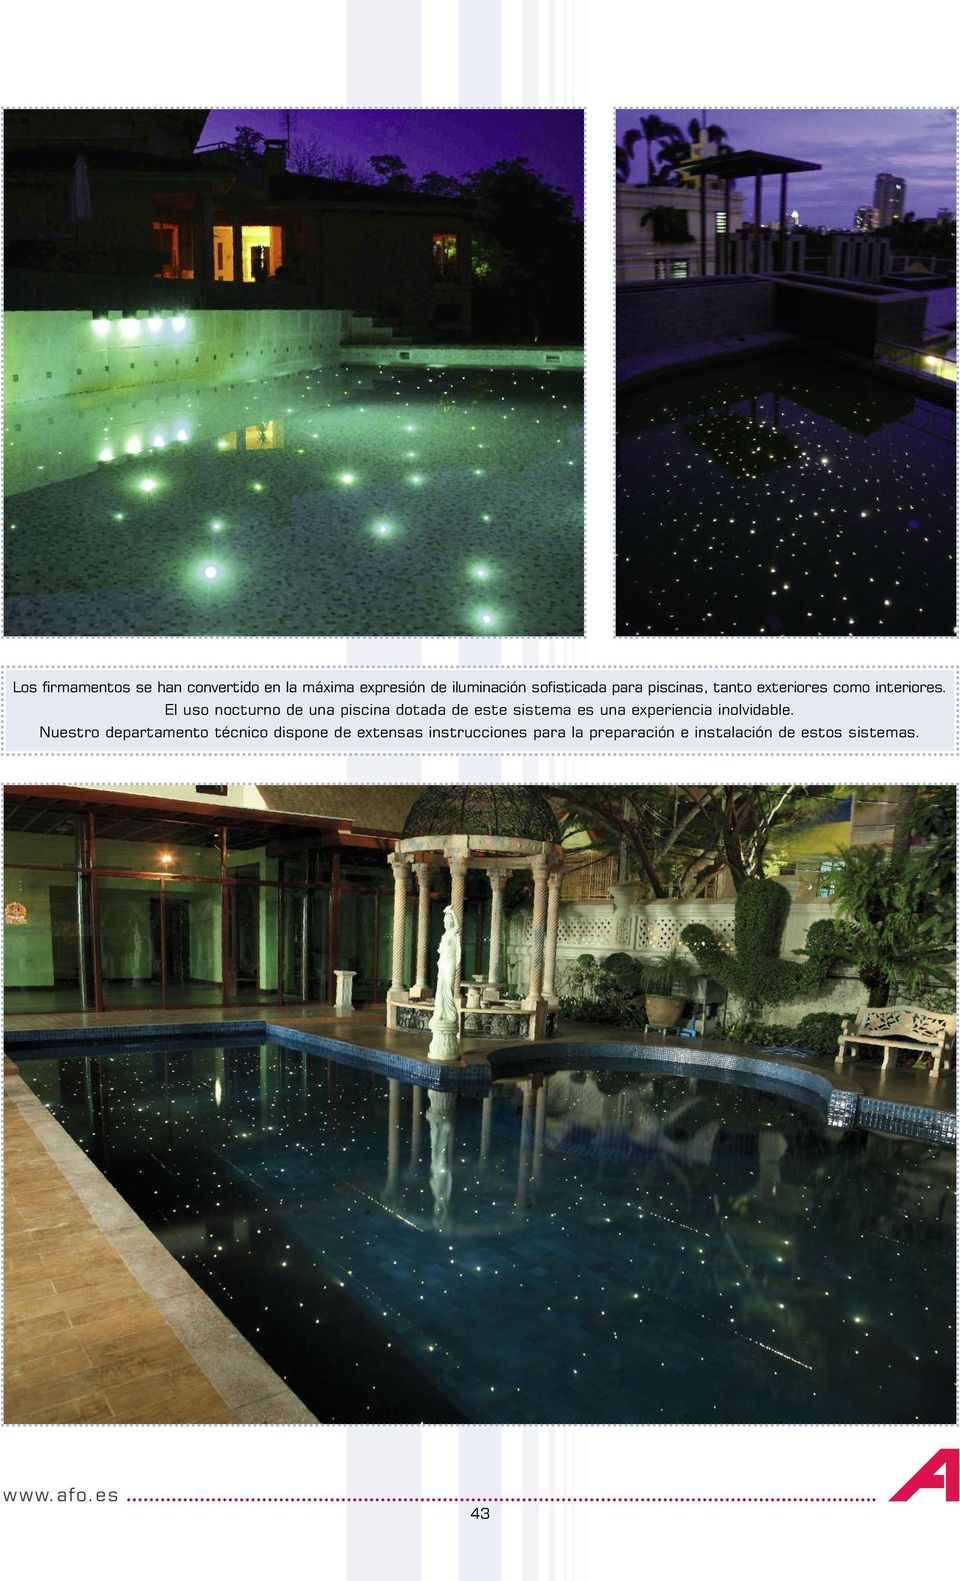 El uso nocturno de una piscina dotada de este sistema es una experiencia inolvidable.